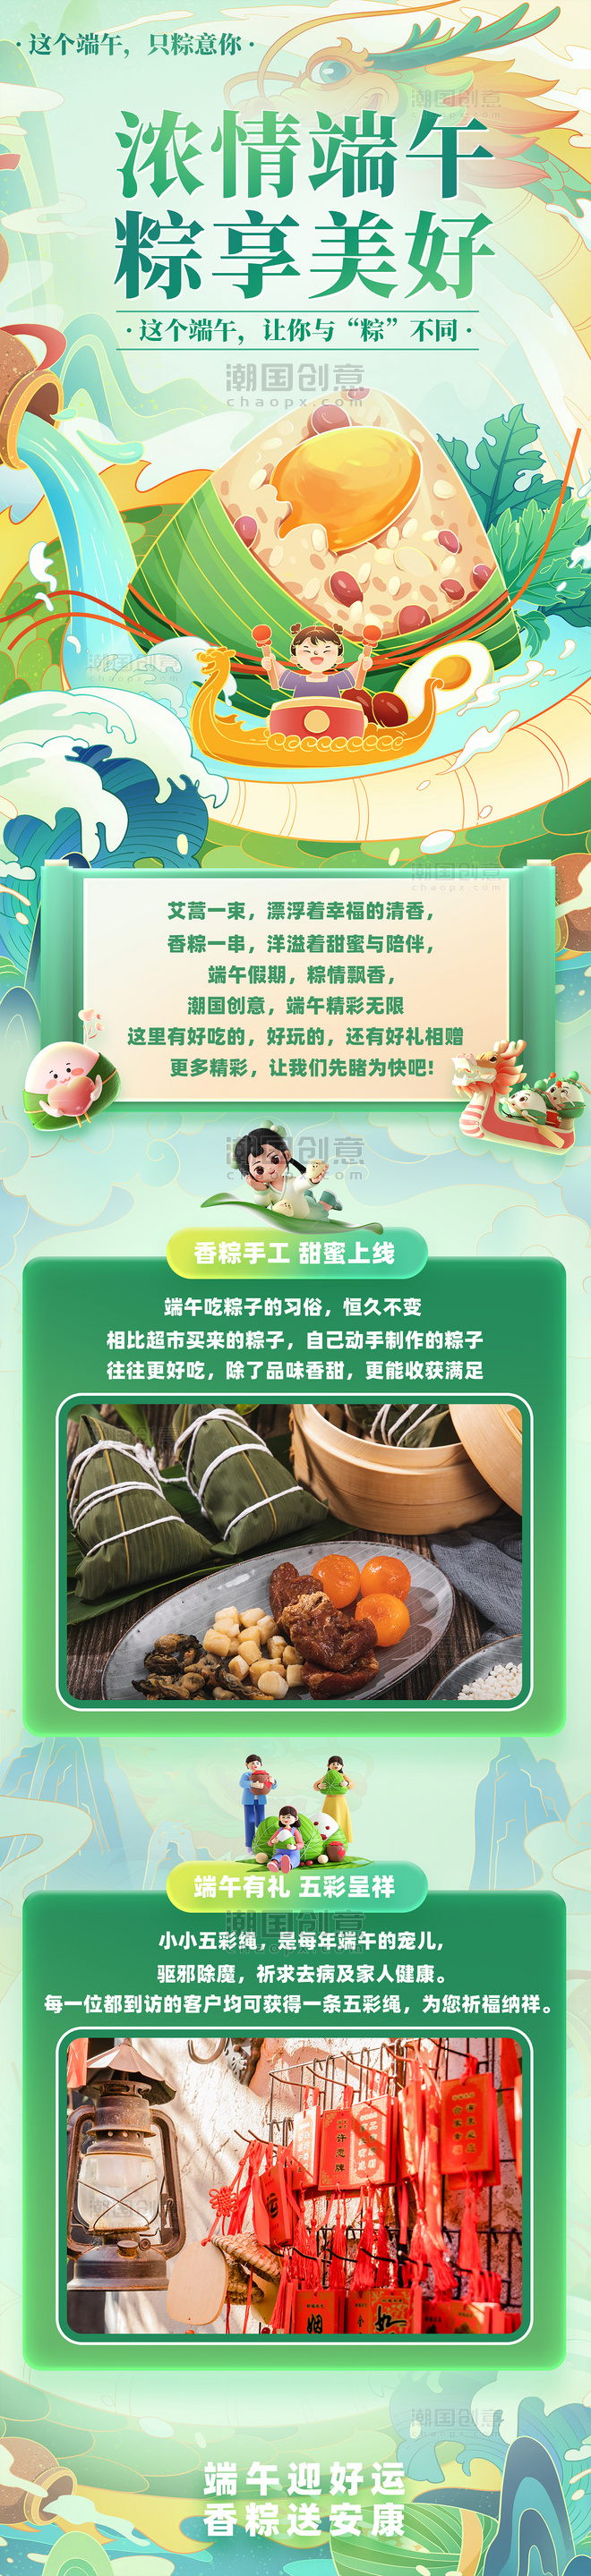 端午粽子活动端午节传统节日营销长图